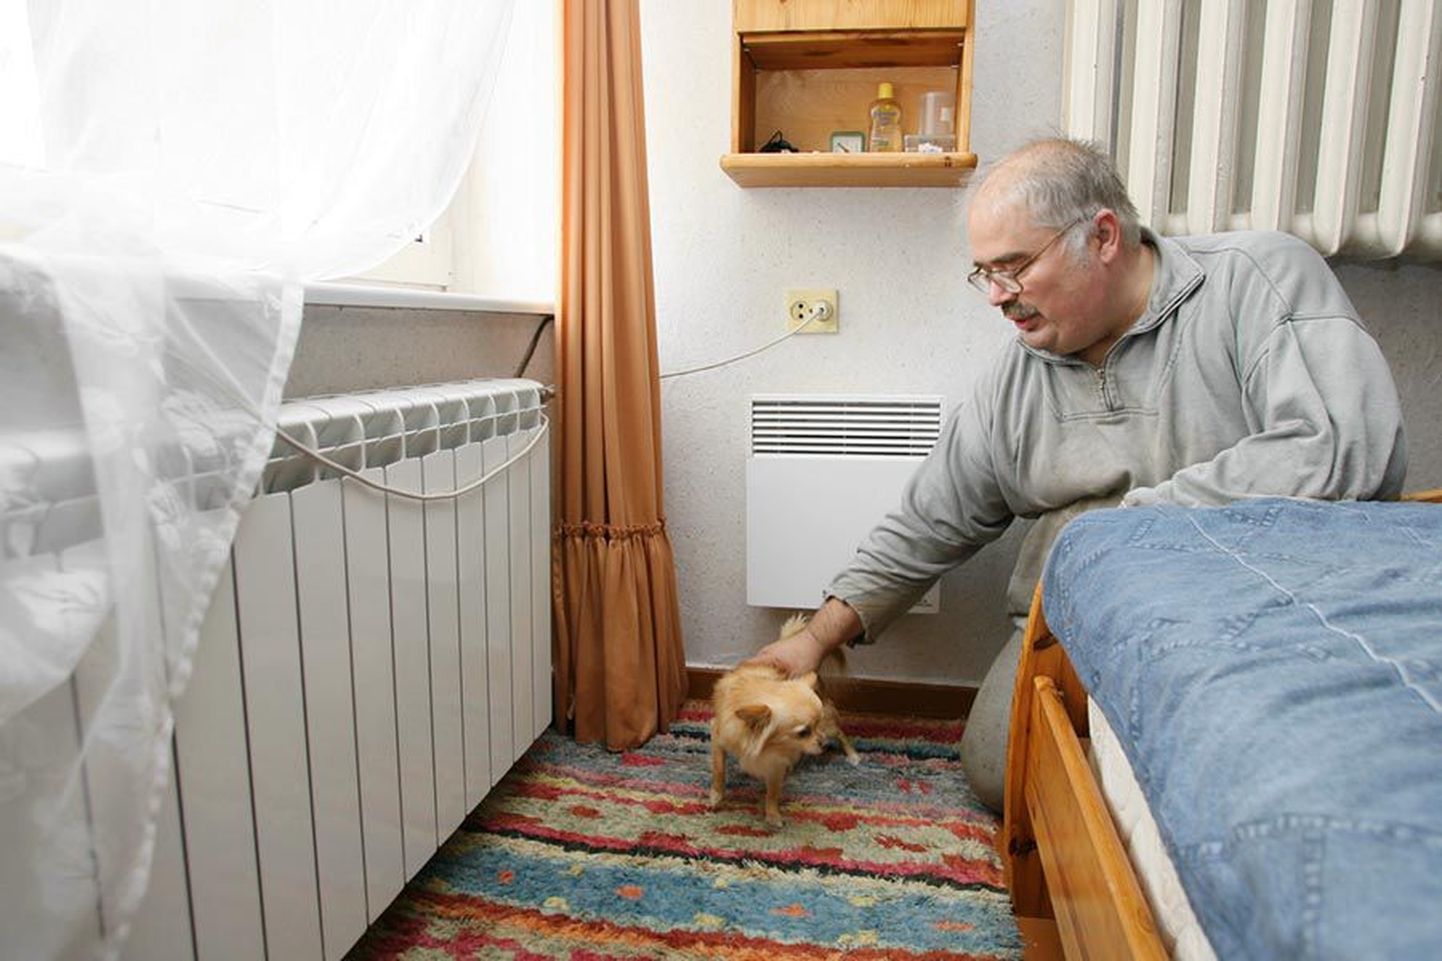 Päri 3 majas elavat Heinar Orgu ning tema koera Oskarit külmad keskkütteradiaatorid ei häiri, sest igas toas on mitu küttekeha. Akna all on külm keskkütteradiaator, seina peal köögist köetav radiaator ning nende vahel on veel väike elektriradiaator.